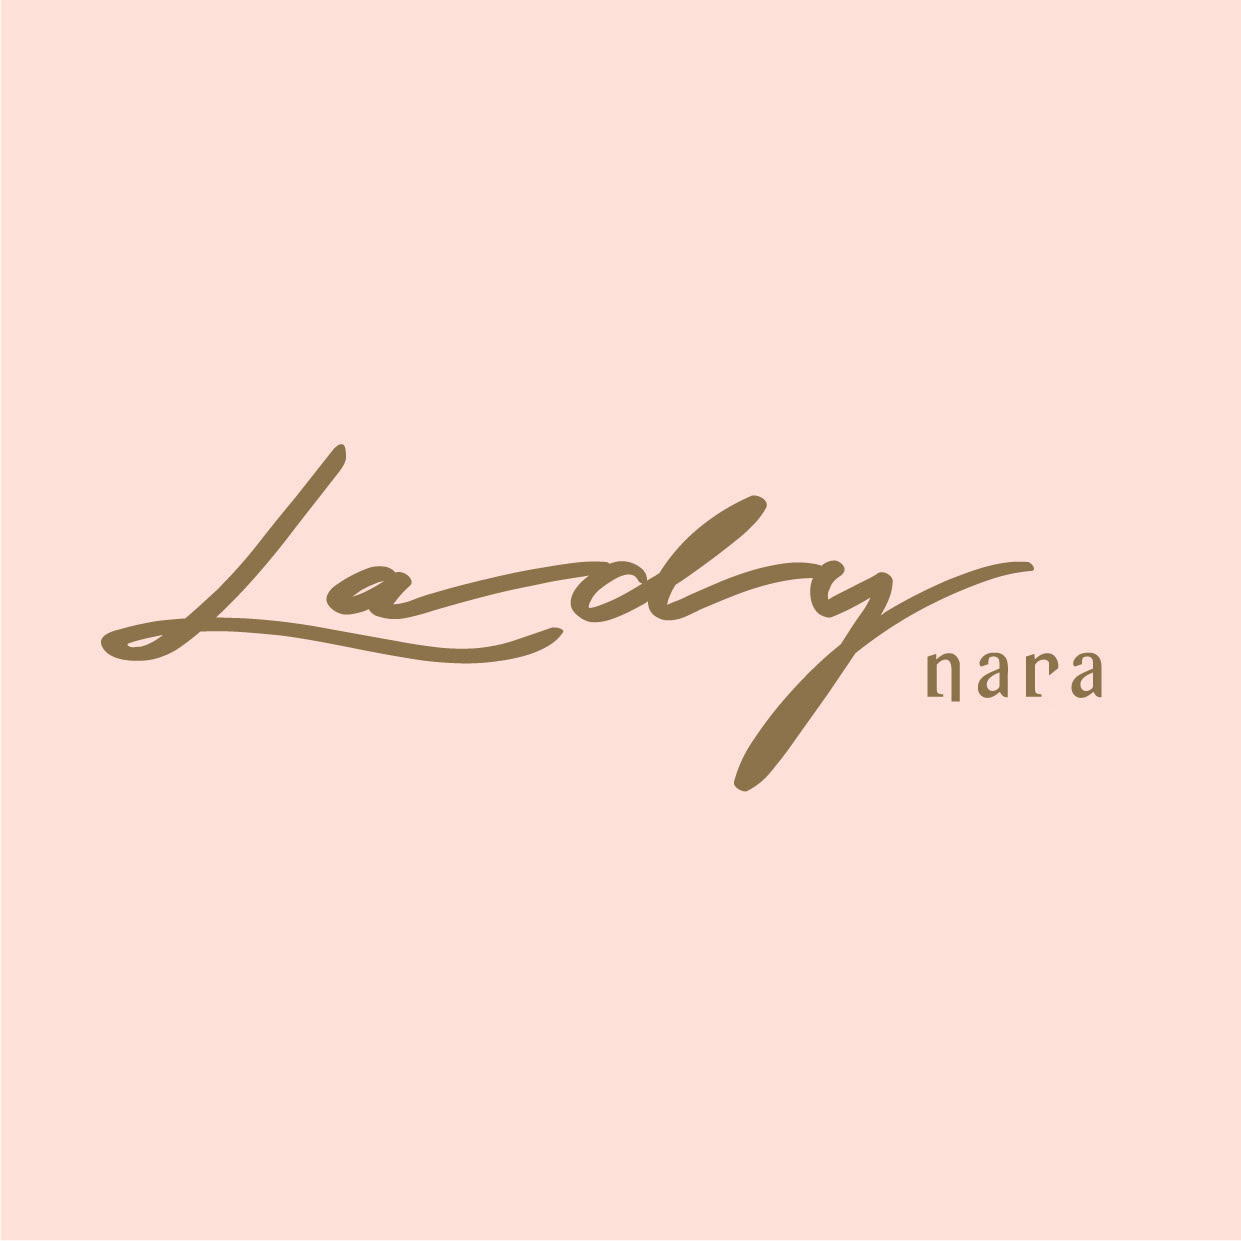 Lady Nara